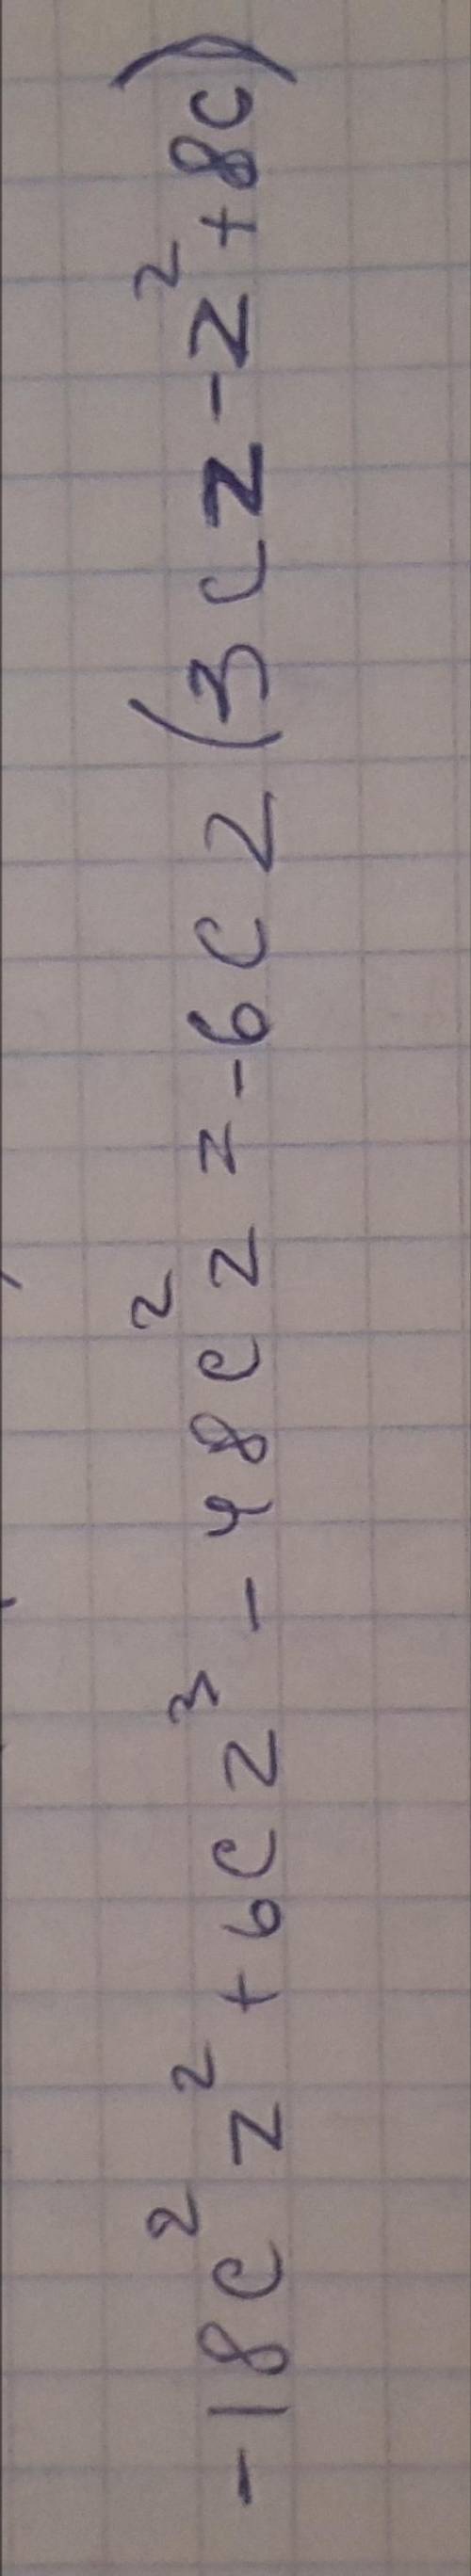 Вынисете за скобки общий множитель: - 18c^2 z^2+6c z^3- 48c^2 z